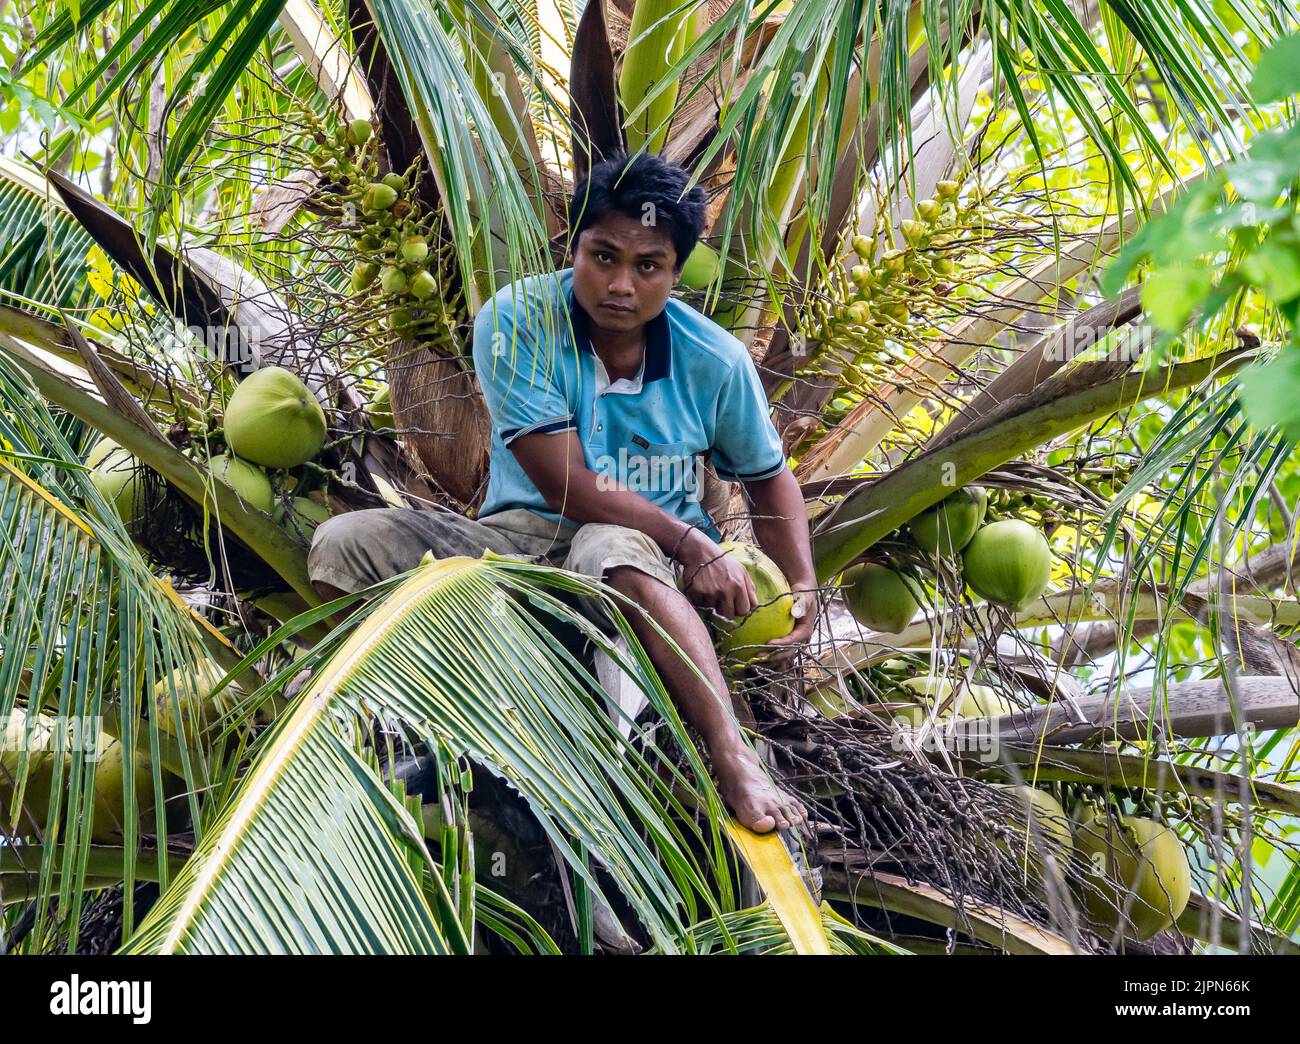 Un jeune indonésien récolte des noix de coco d'un arbre. Sulawesi, Indonésie. Banque D'Images